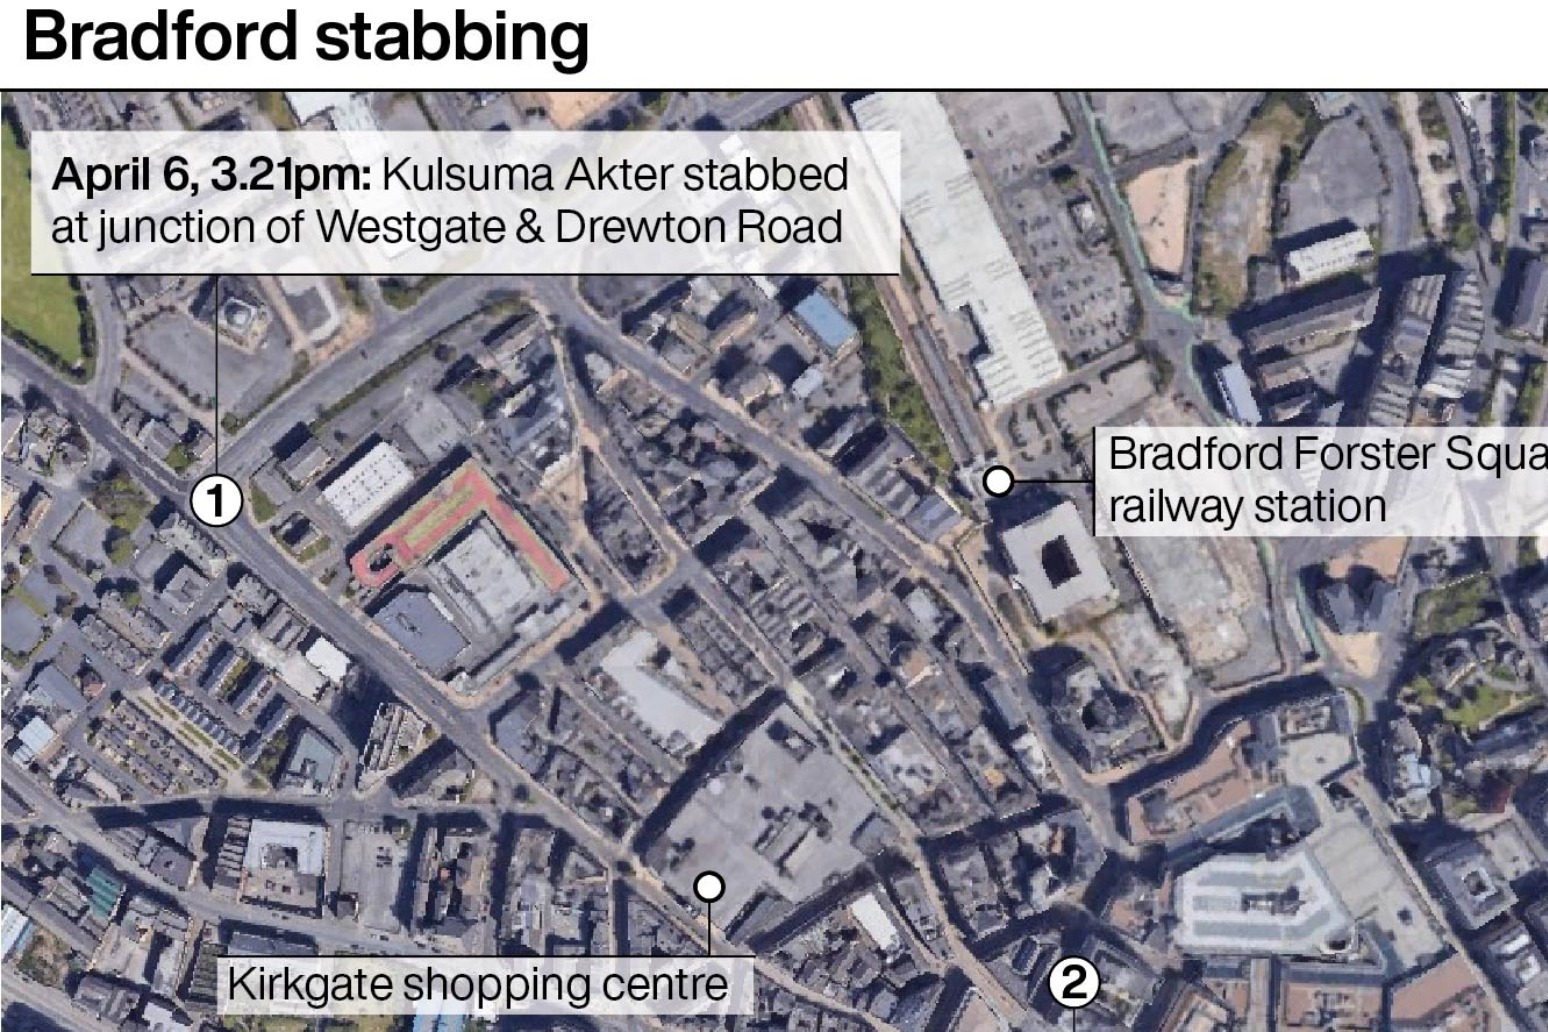 Man arrested after Bradford stabbing 